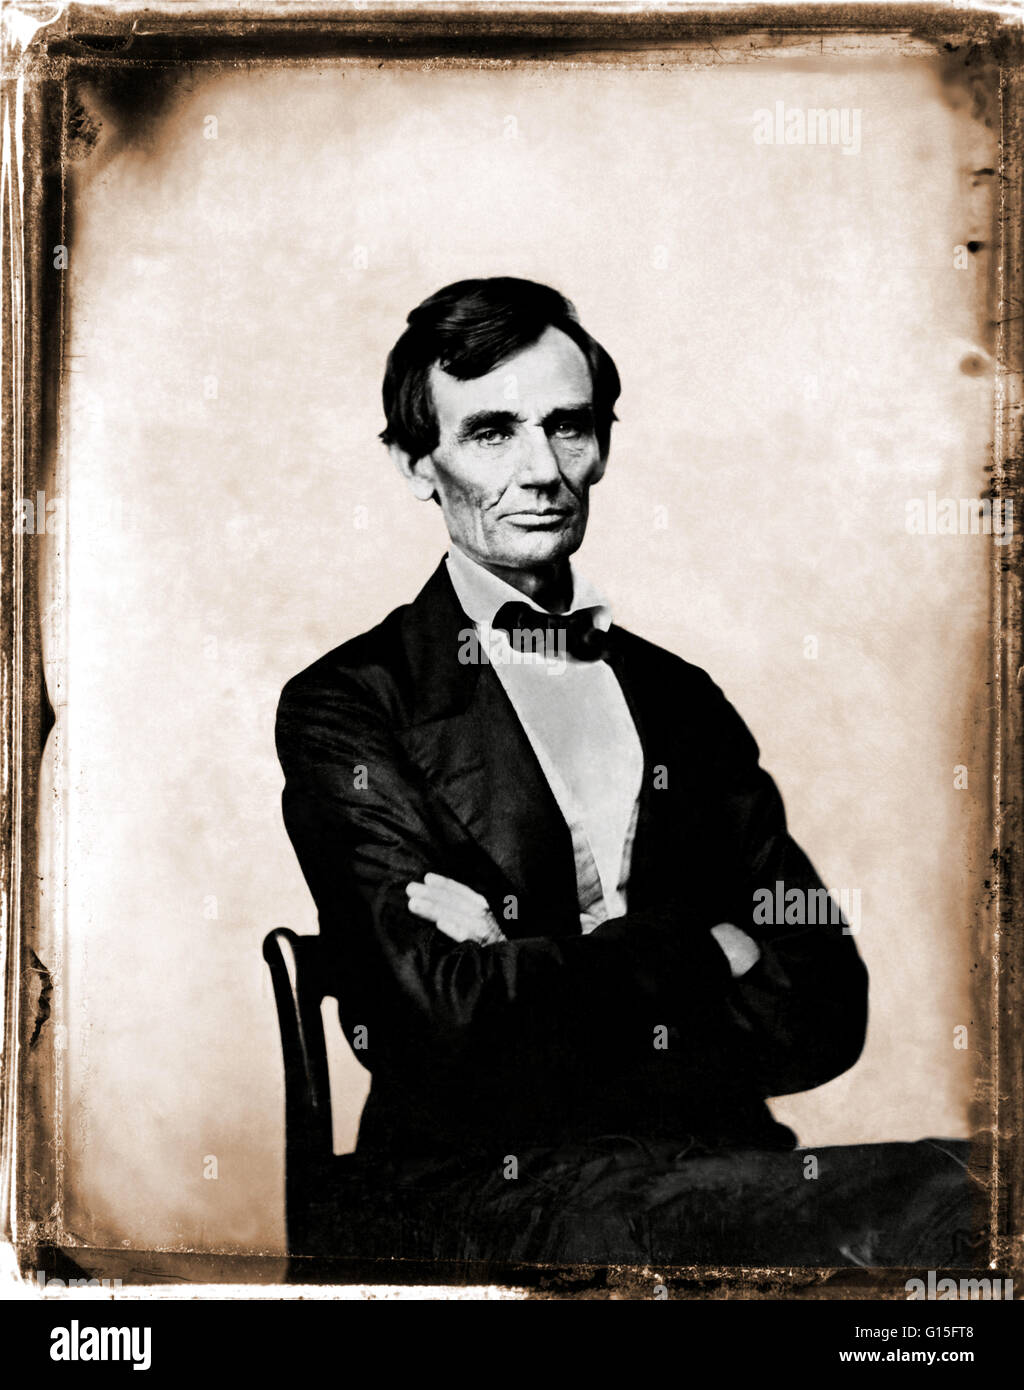 Lincoln, fotografiert von Preston Butler am 13. August 1860 in Springfield, Illinois. Abraham Lincoln (12. Februar 1809 - 15. April 1865) war der 16. Präsident der Vereinigten Staaten, von März 1861 bis zu seiner Ermordung im Jahre 1865. Er führte sein Land throu Stockfoto